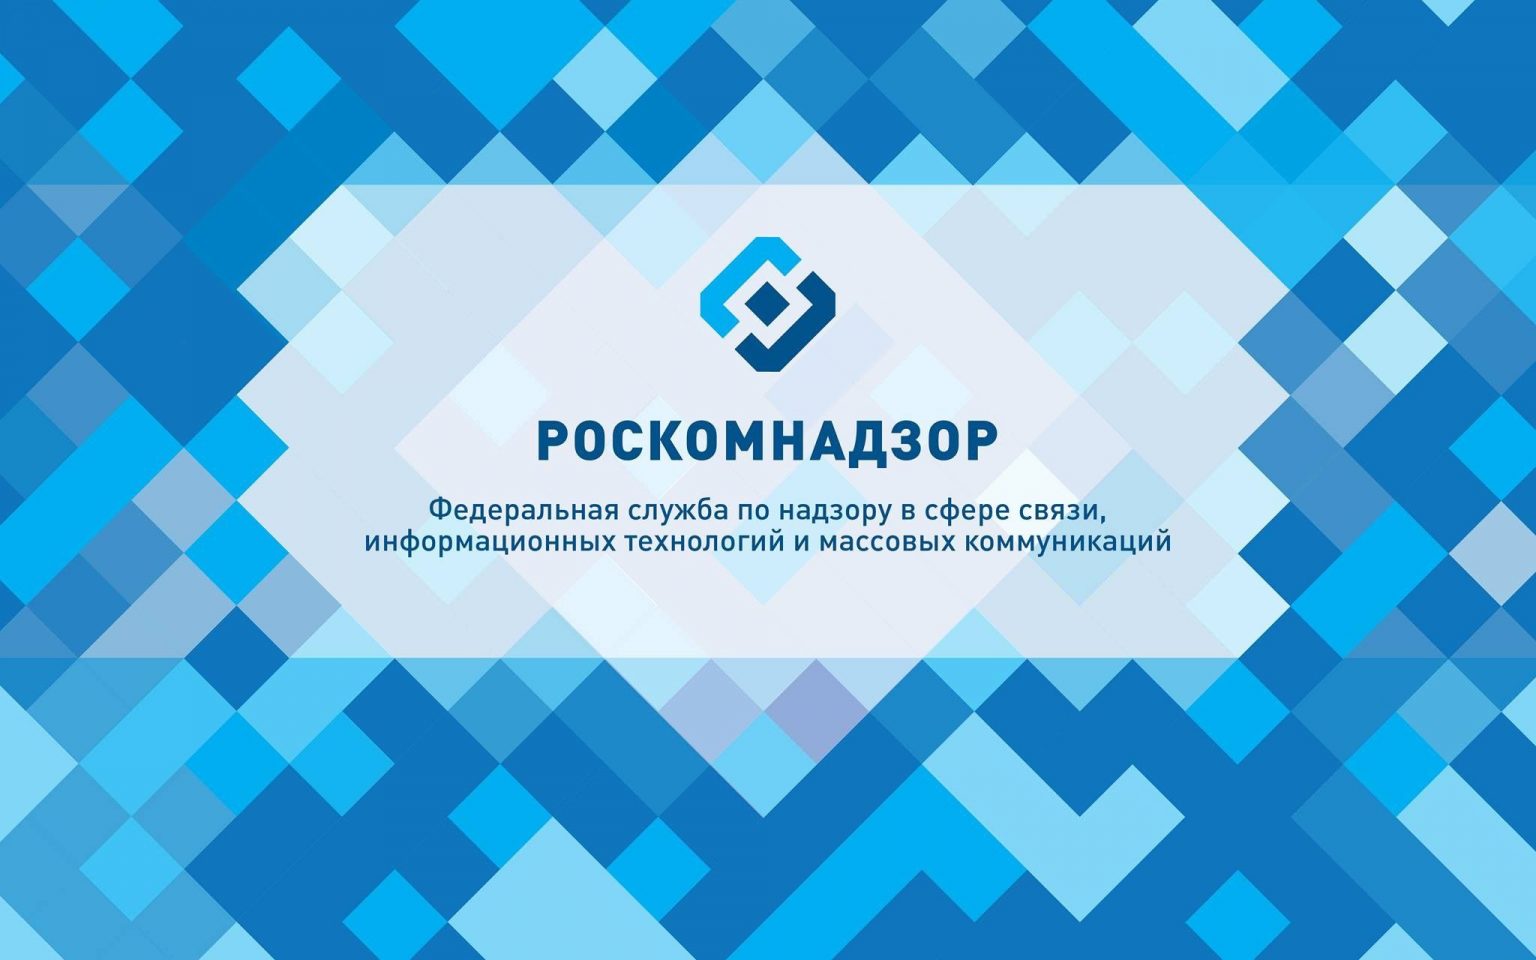 Блогеров с аудиторией от тысячи человек могут обязать подать персональные данные в Роскомнадзор